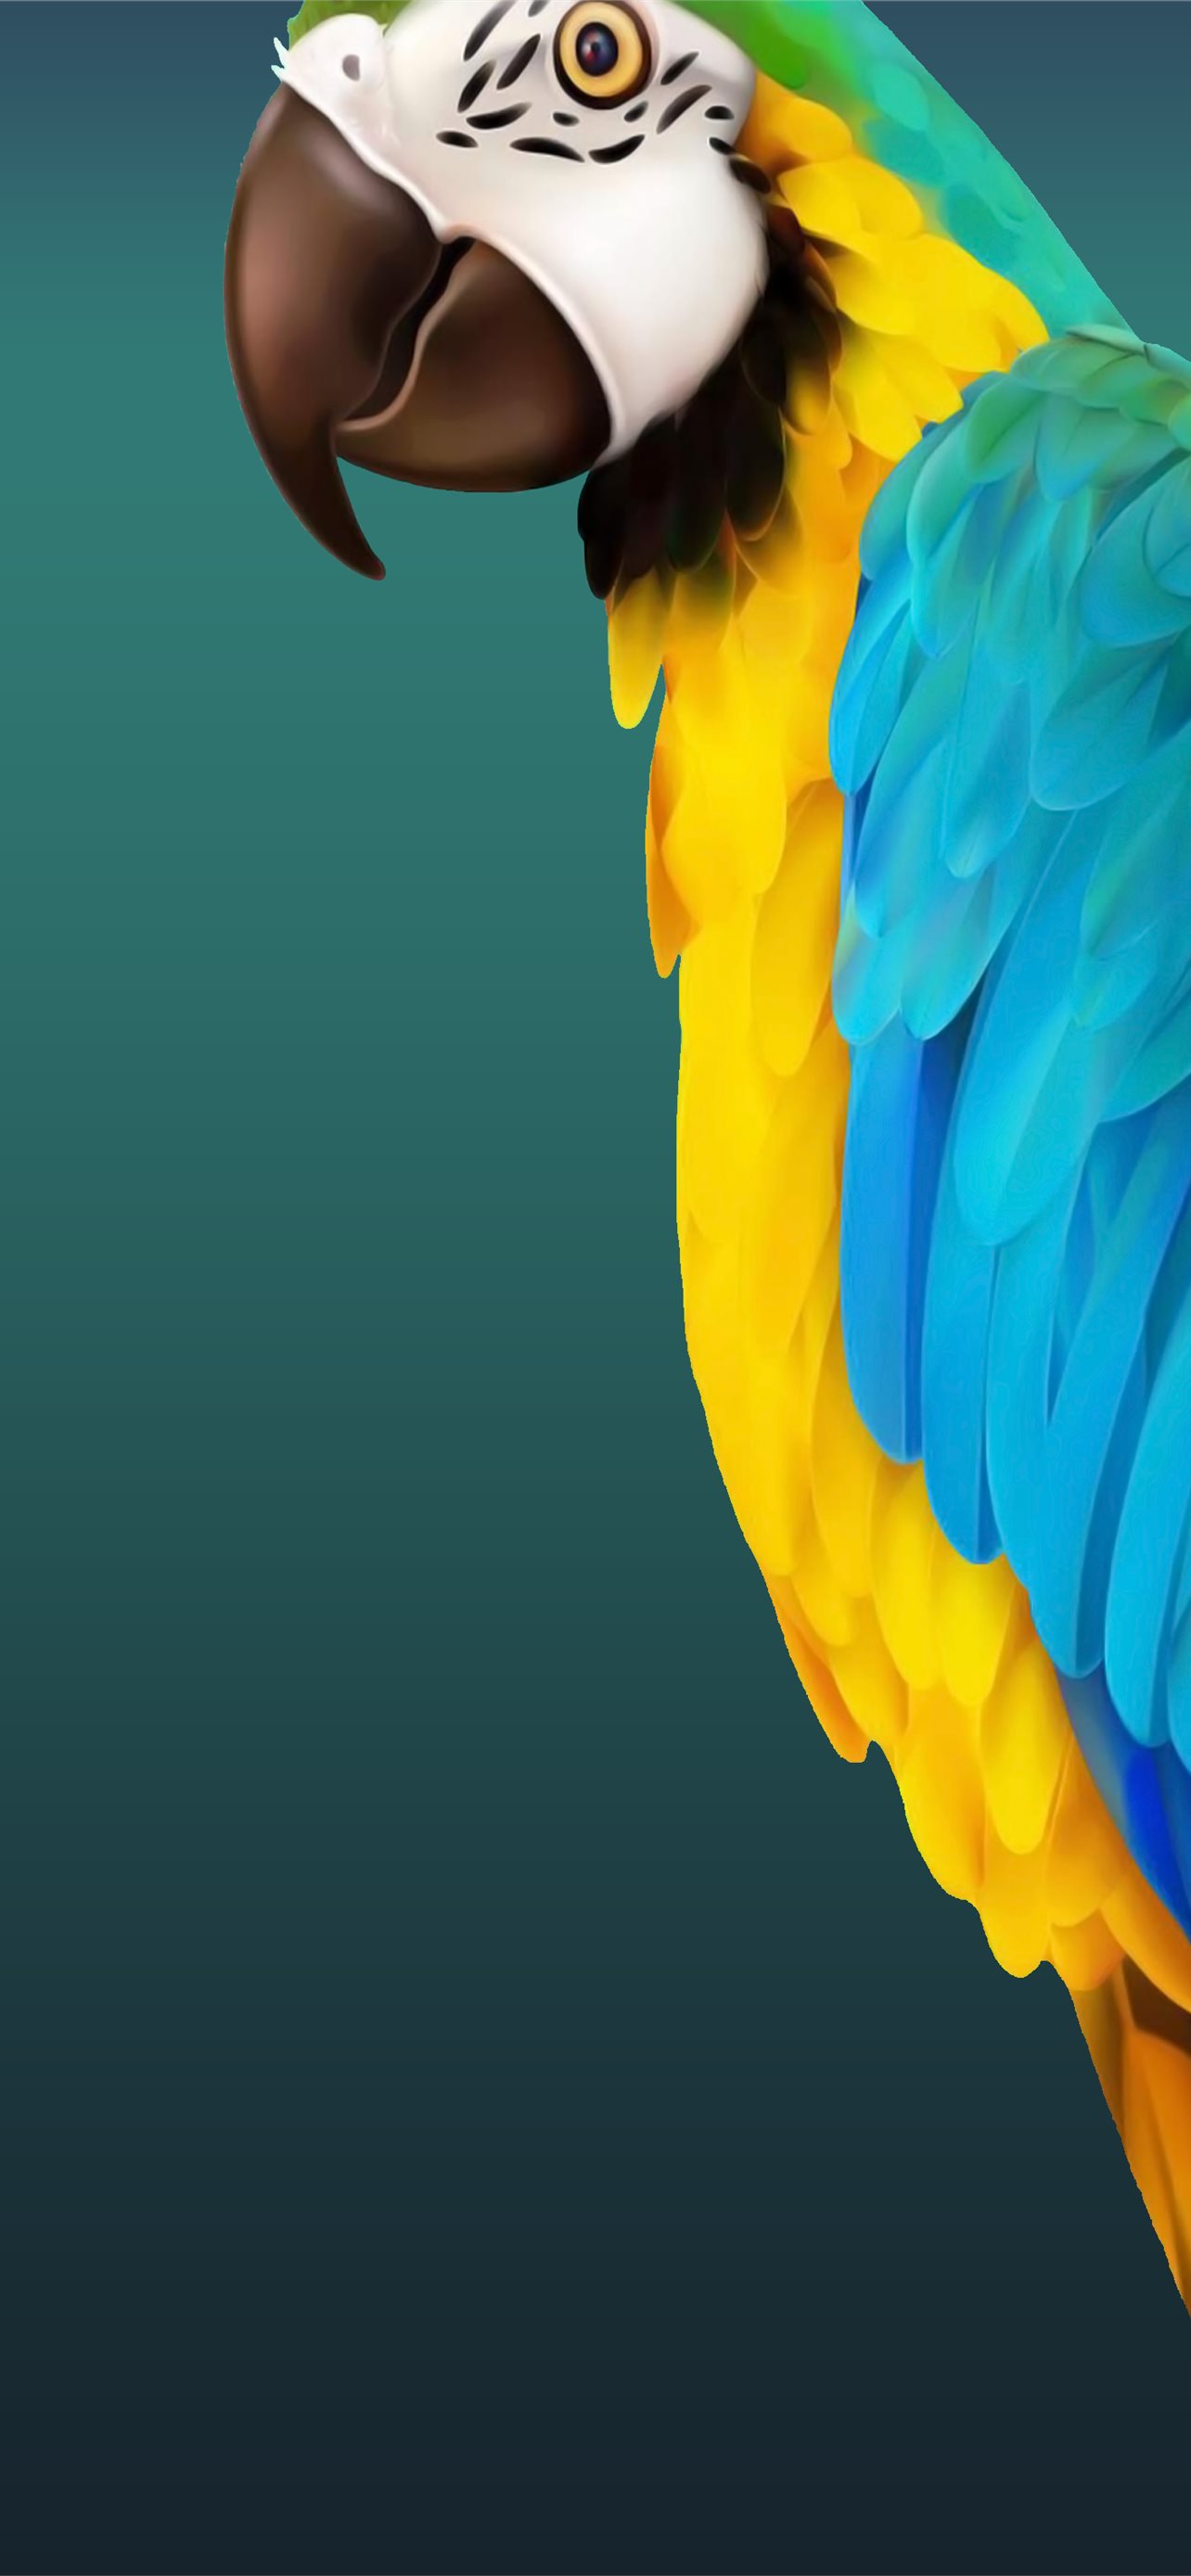 Bộ sưu tập hình nền iPhone vẽ chim trên nền đậm hơn là một lựa chọn tuyệt vời để làm hình nền. Hình ảnh này được chỉnh sửa để cho nền được sáng và rõ nét hơn, giúp tạo ra sự phấn khích khi sử dụng điện thoại của bạn. Hãy tải về và sử dụng để trang trí cho chiếc điện thoại của bạn trở nên đẹp hơn nữa.